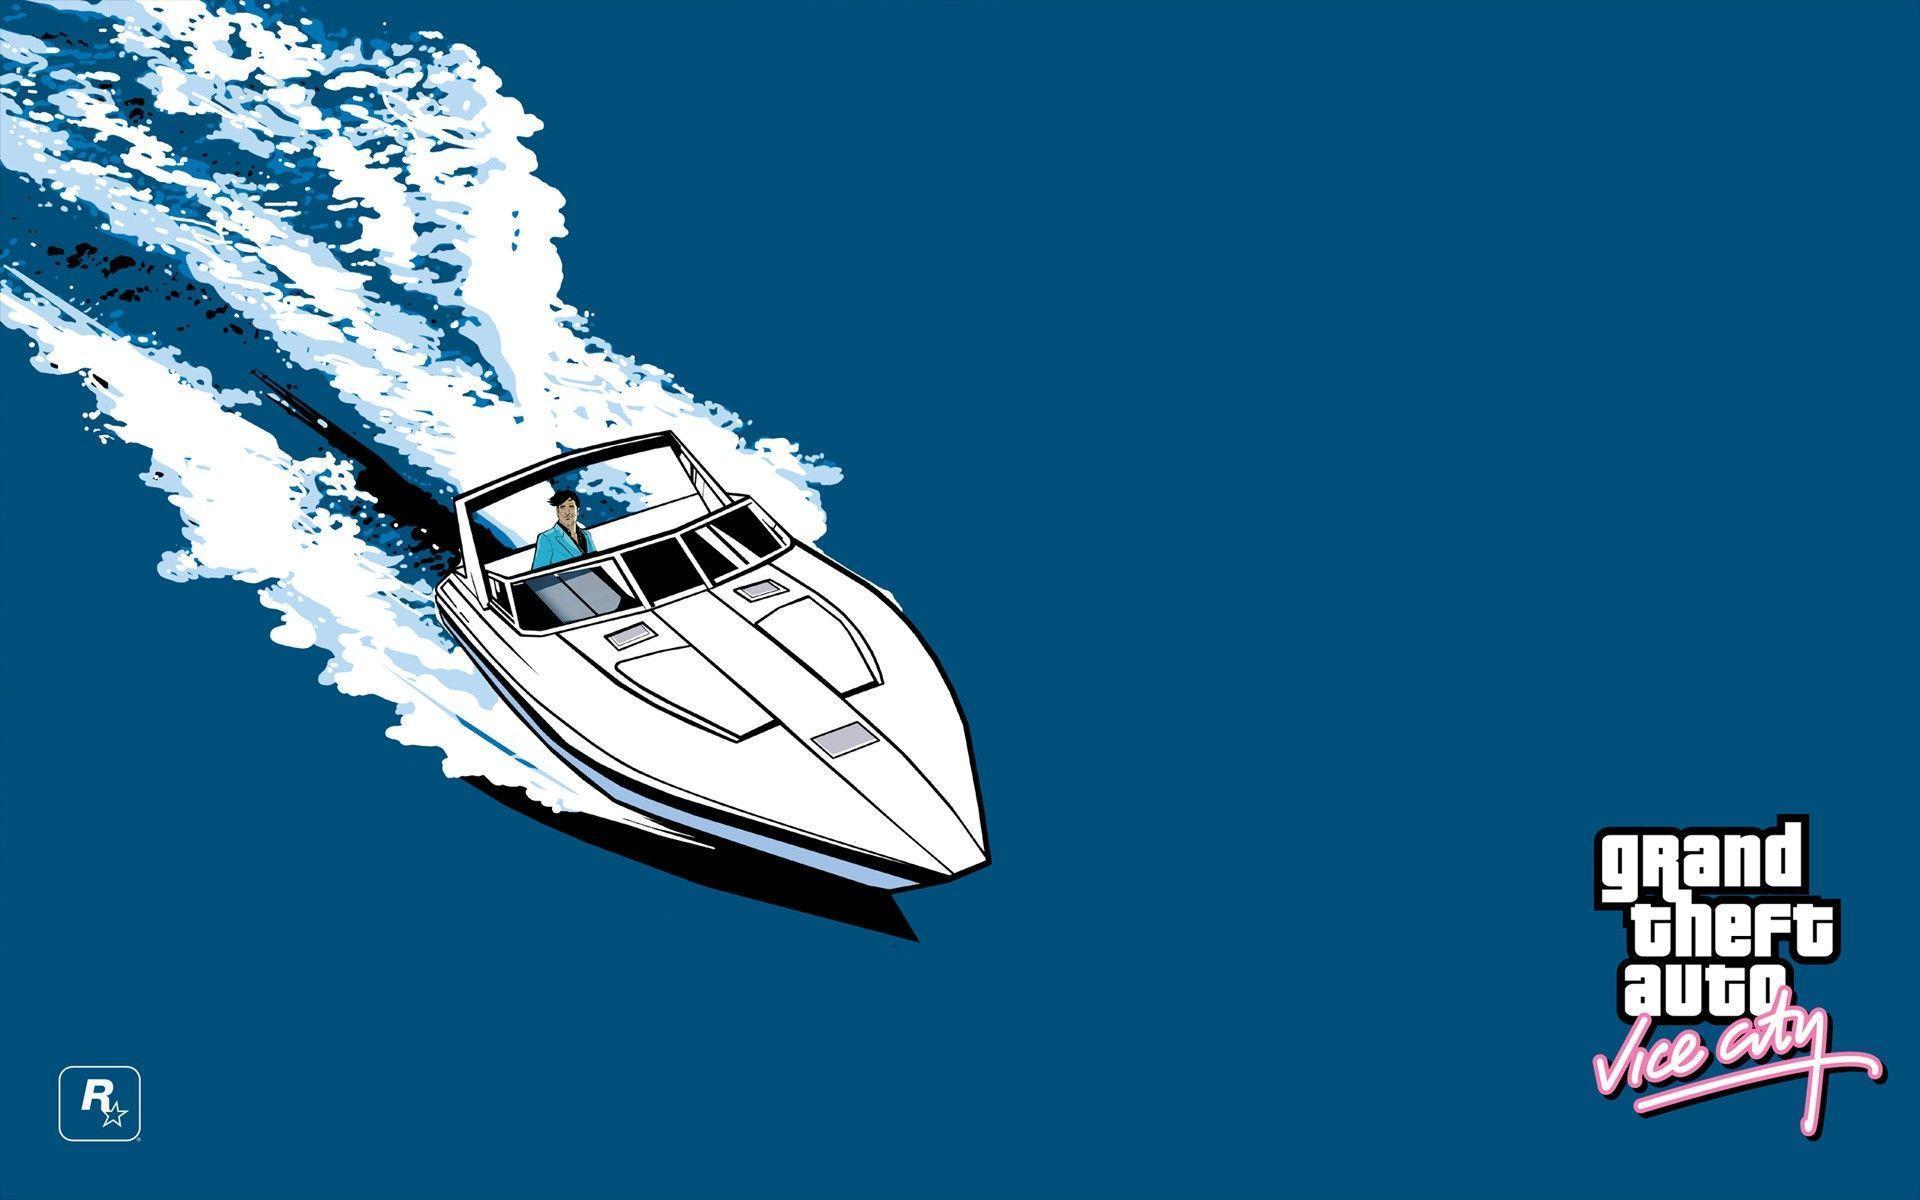 Grand Theft Auto Vice City, Boat, Sea, Rockstar Games, Logo